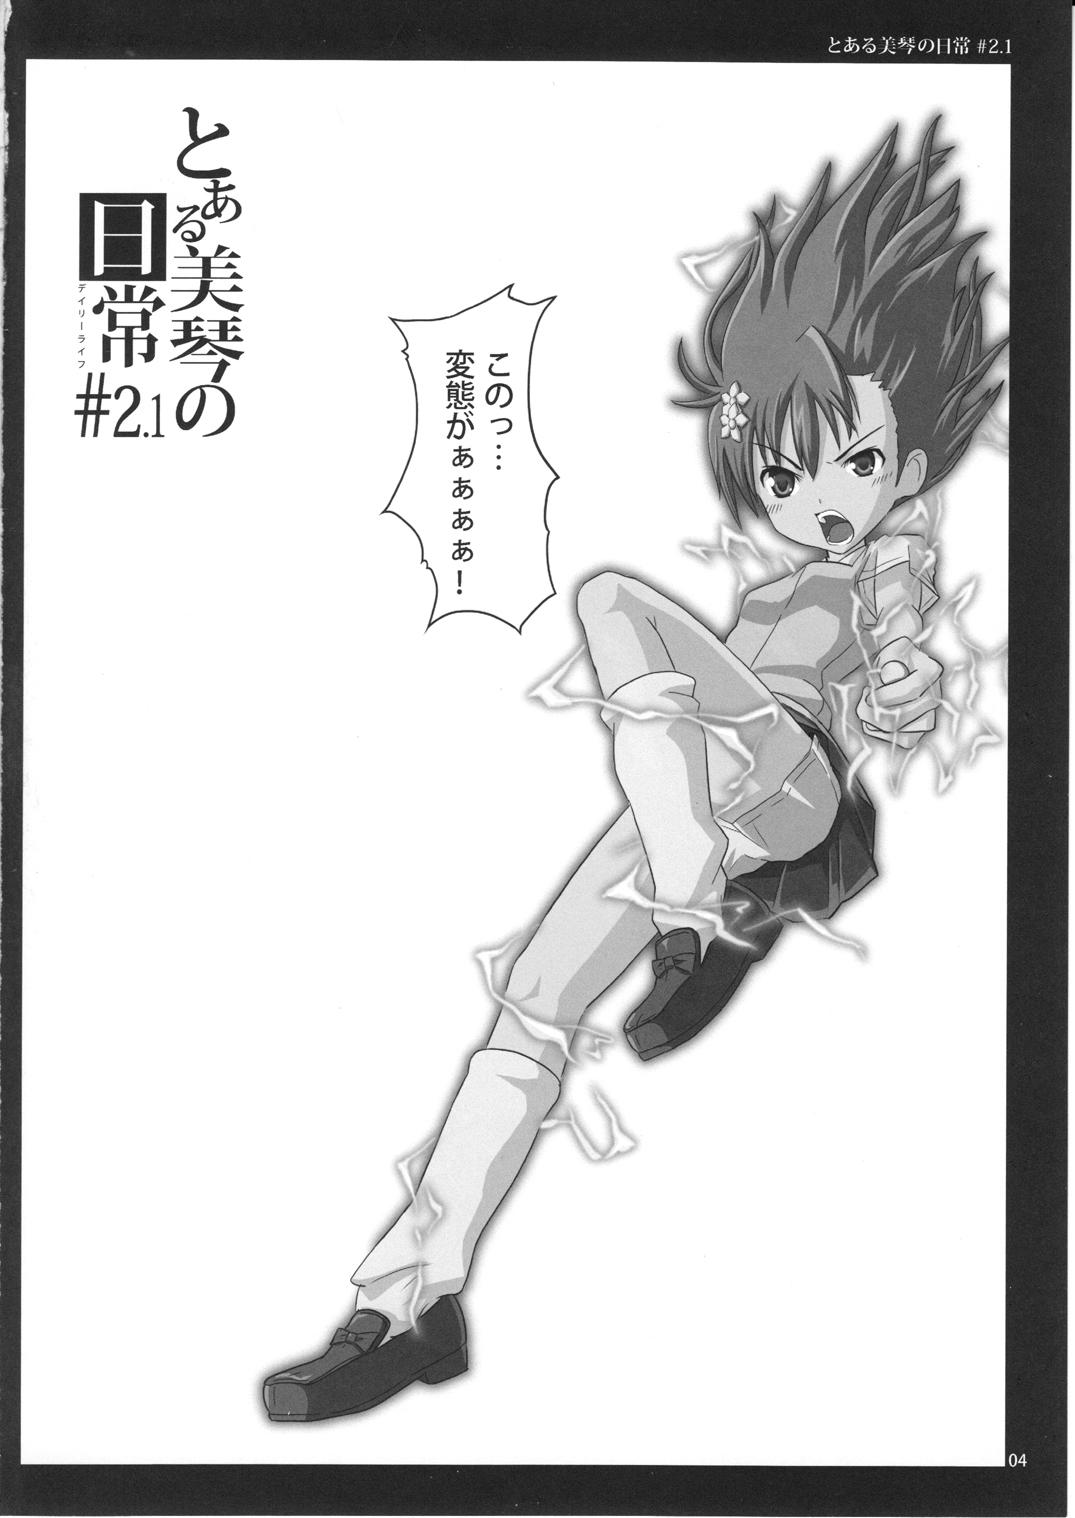 Clip To Aru Mikoto no Nichijou 2.1 - Toaru kagaku no railgun Shesafreak - Page 4